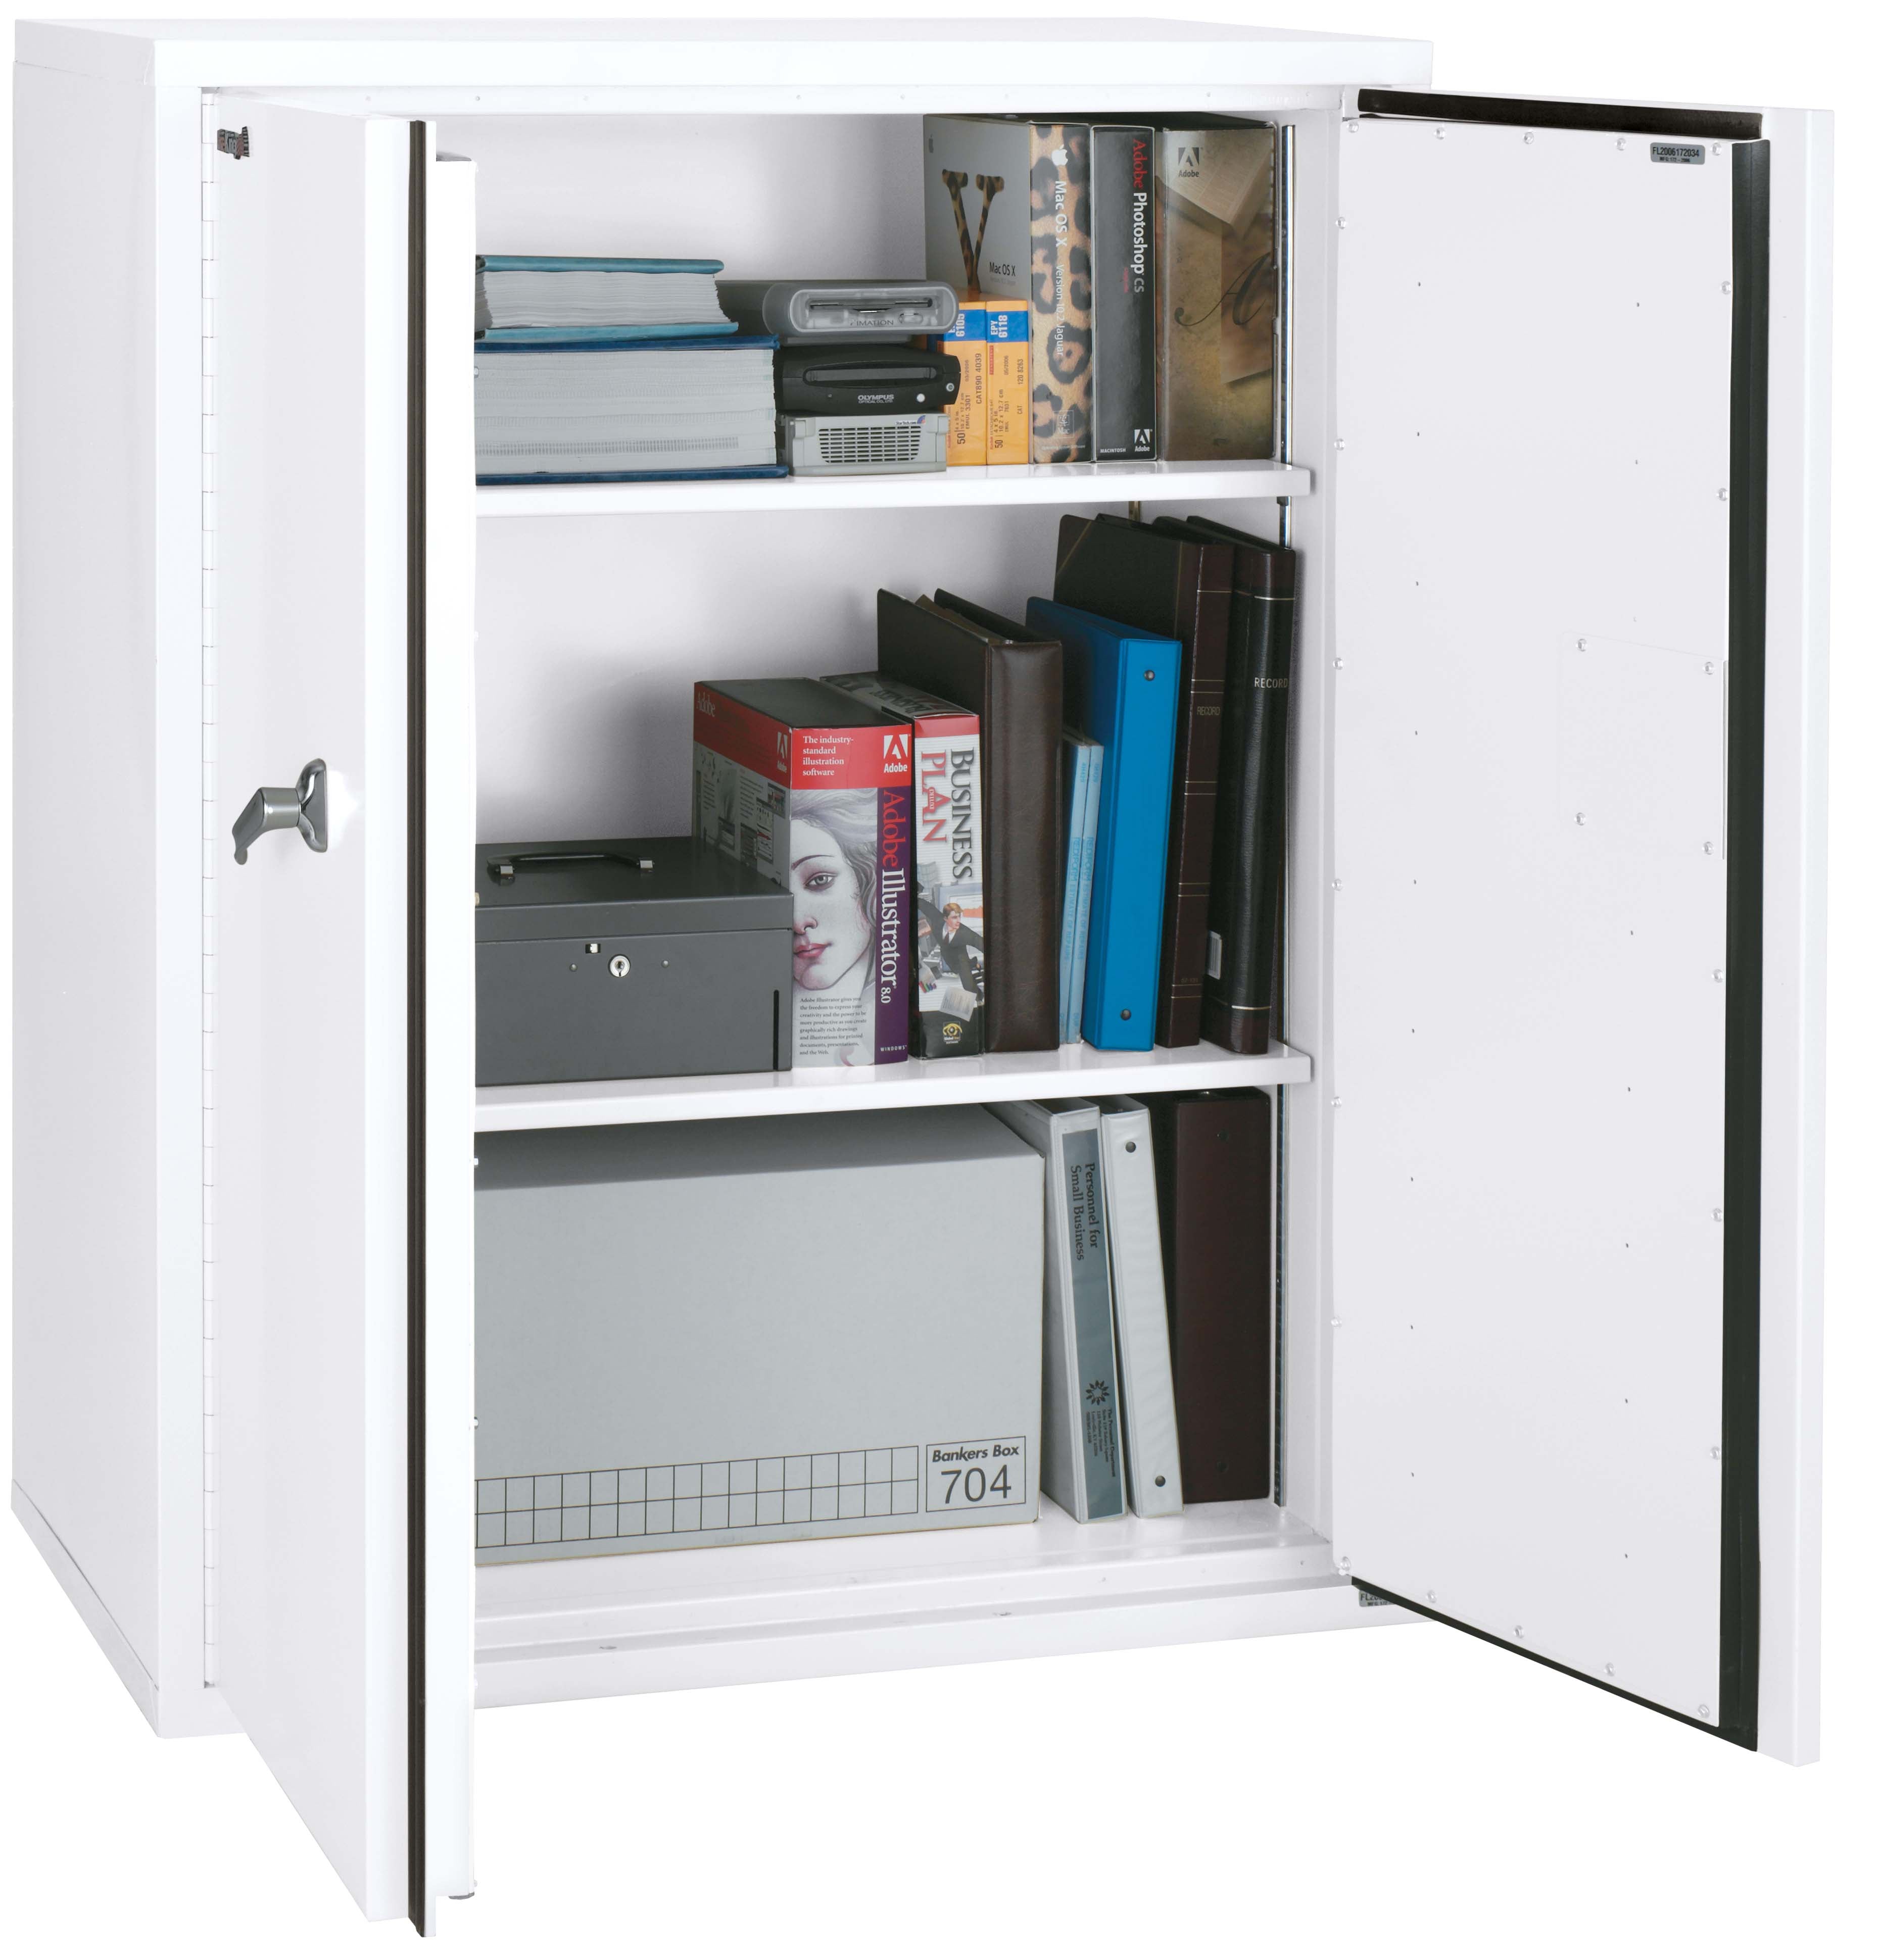 Fire Resistant - Double door storage cabinet - 44"